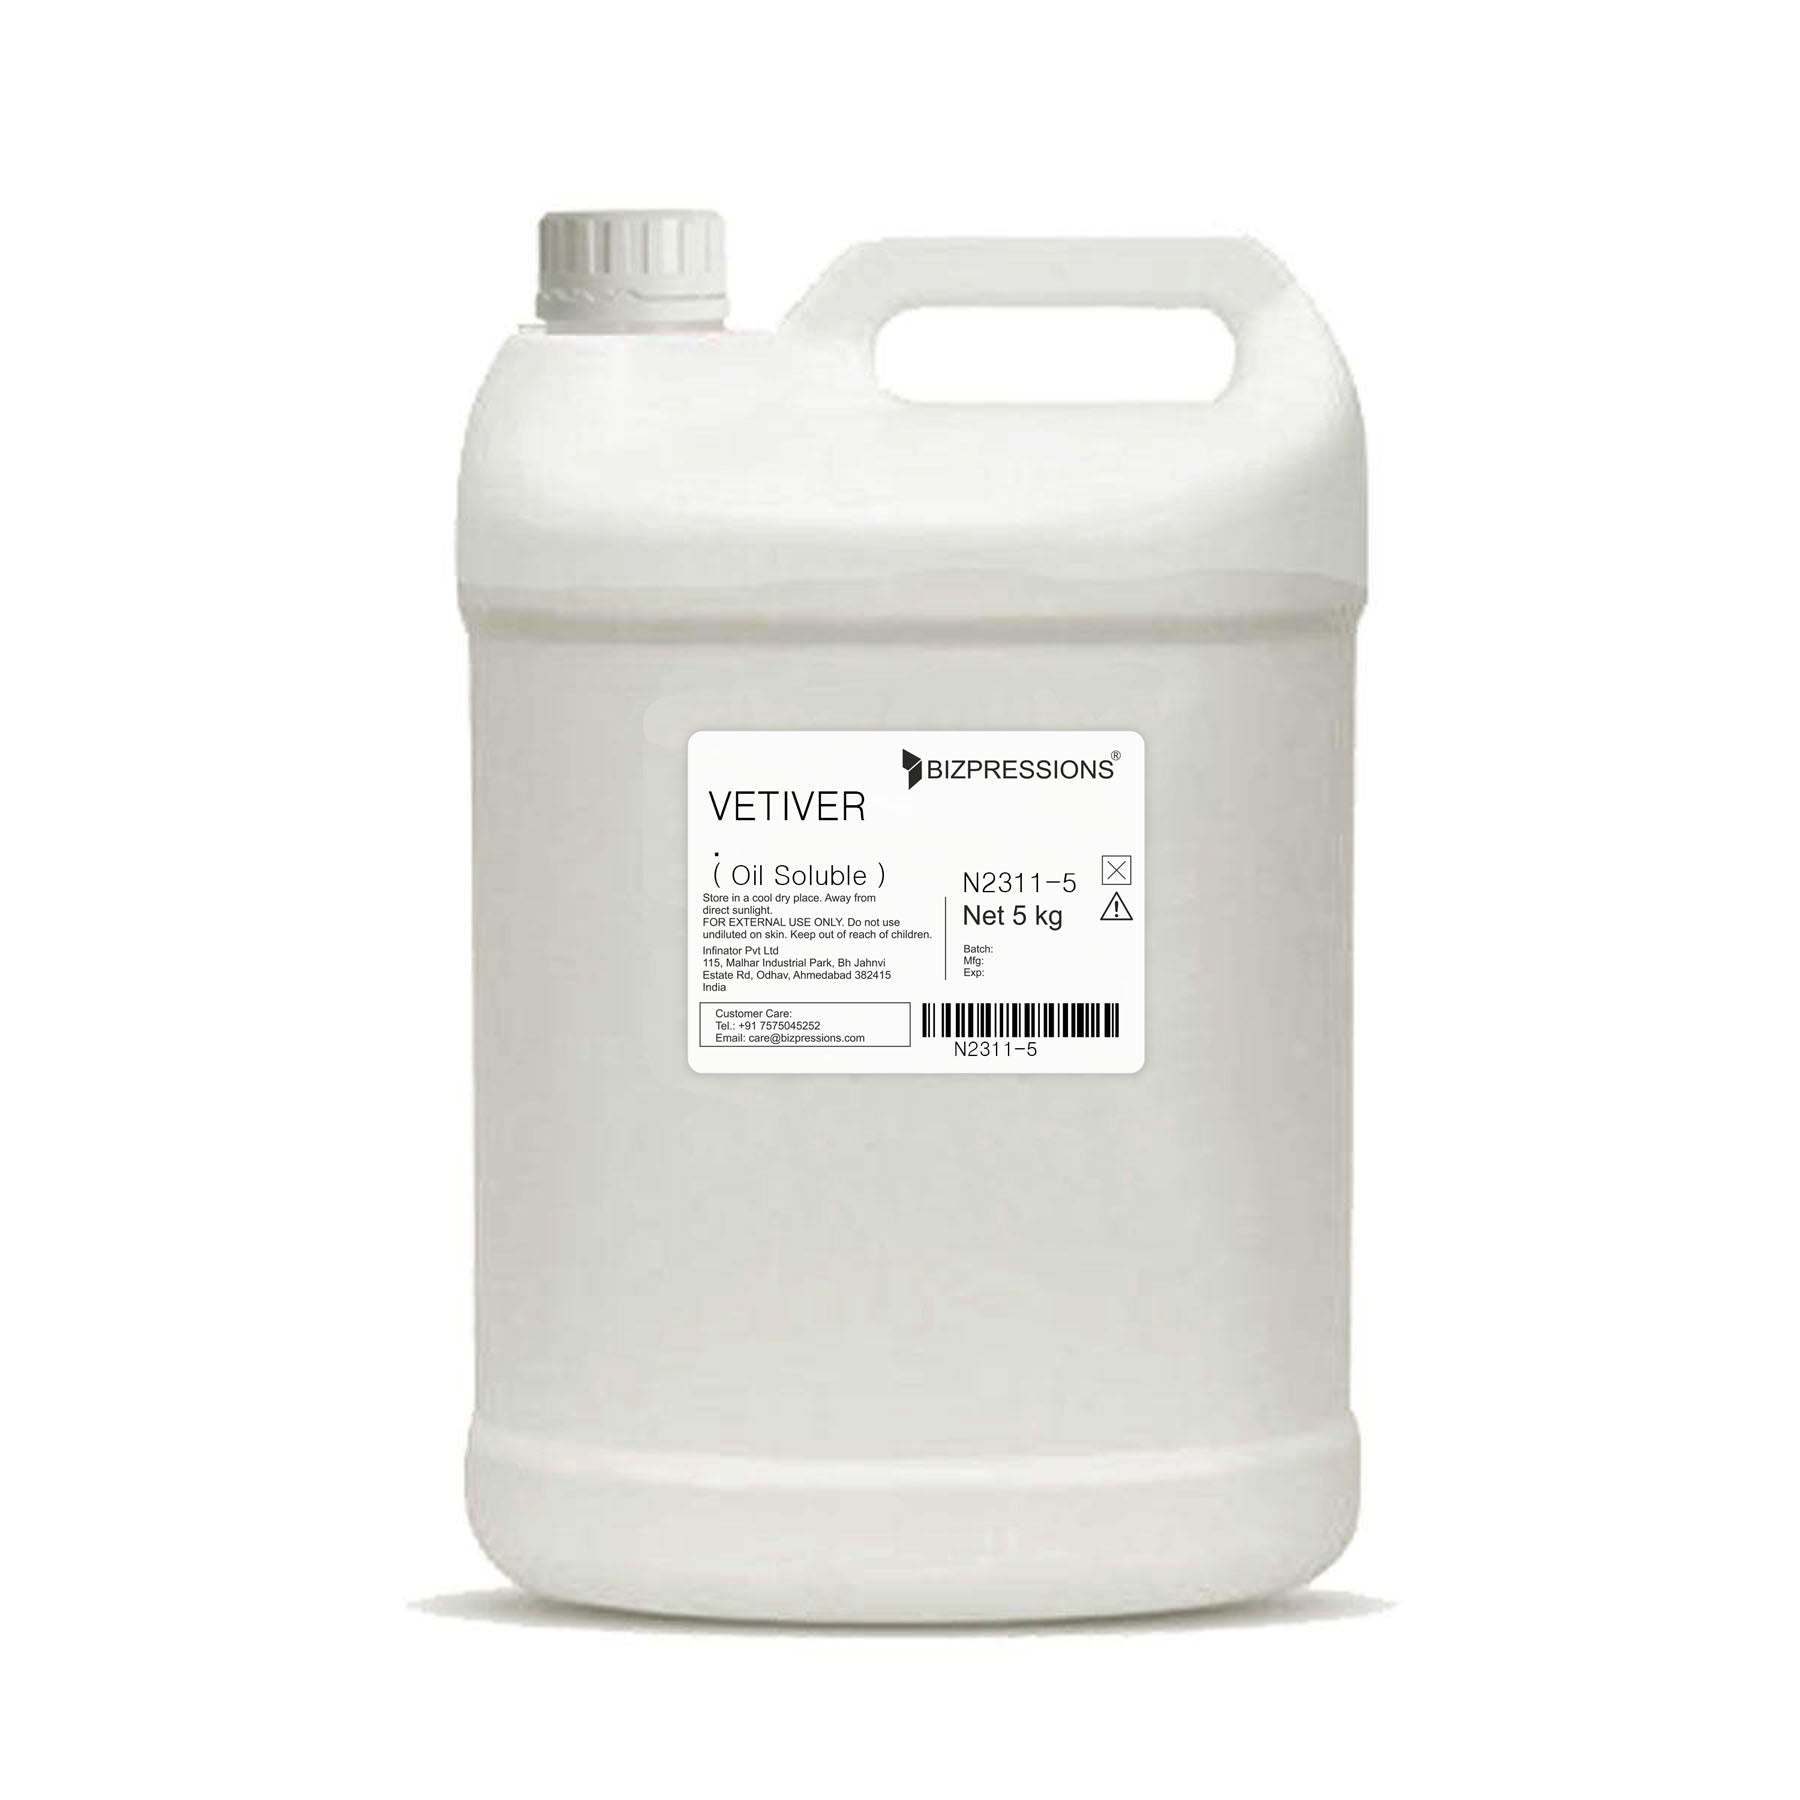 VETIVER - Fragrance ( Oil Soluble ) - 5 kg